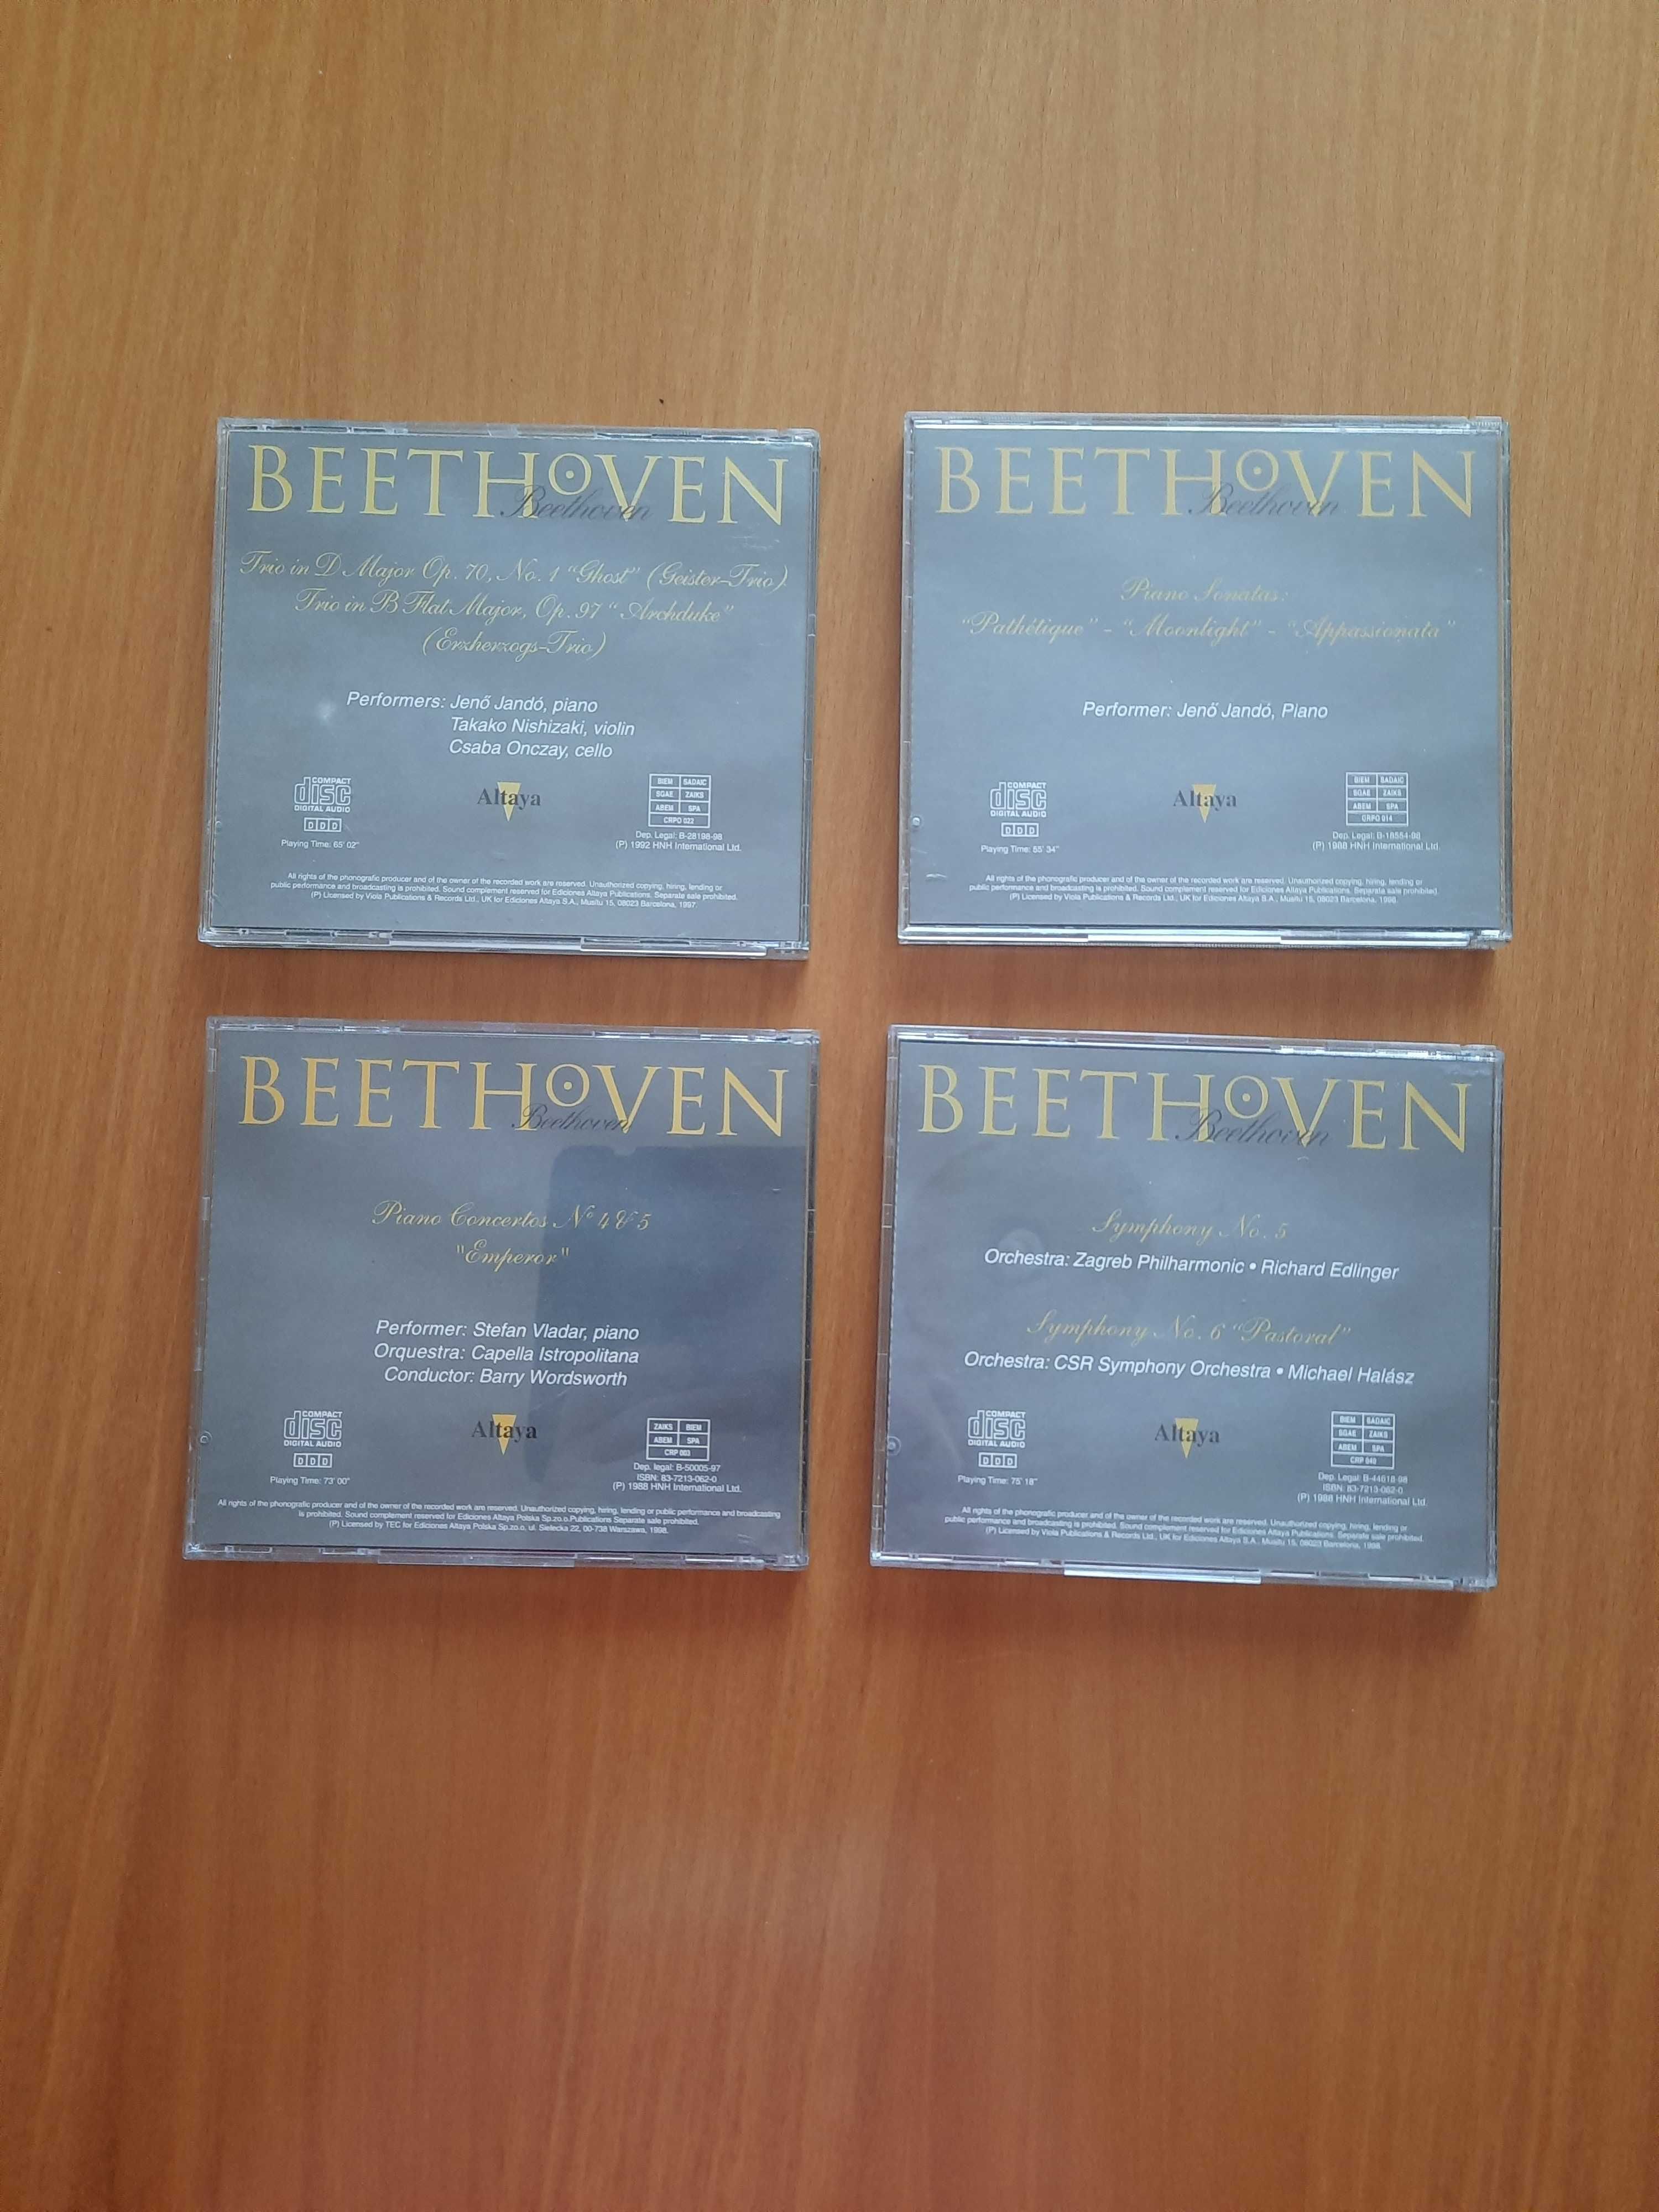 Beethoven - 4 płyty